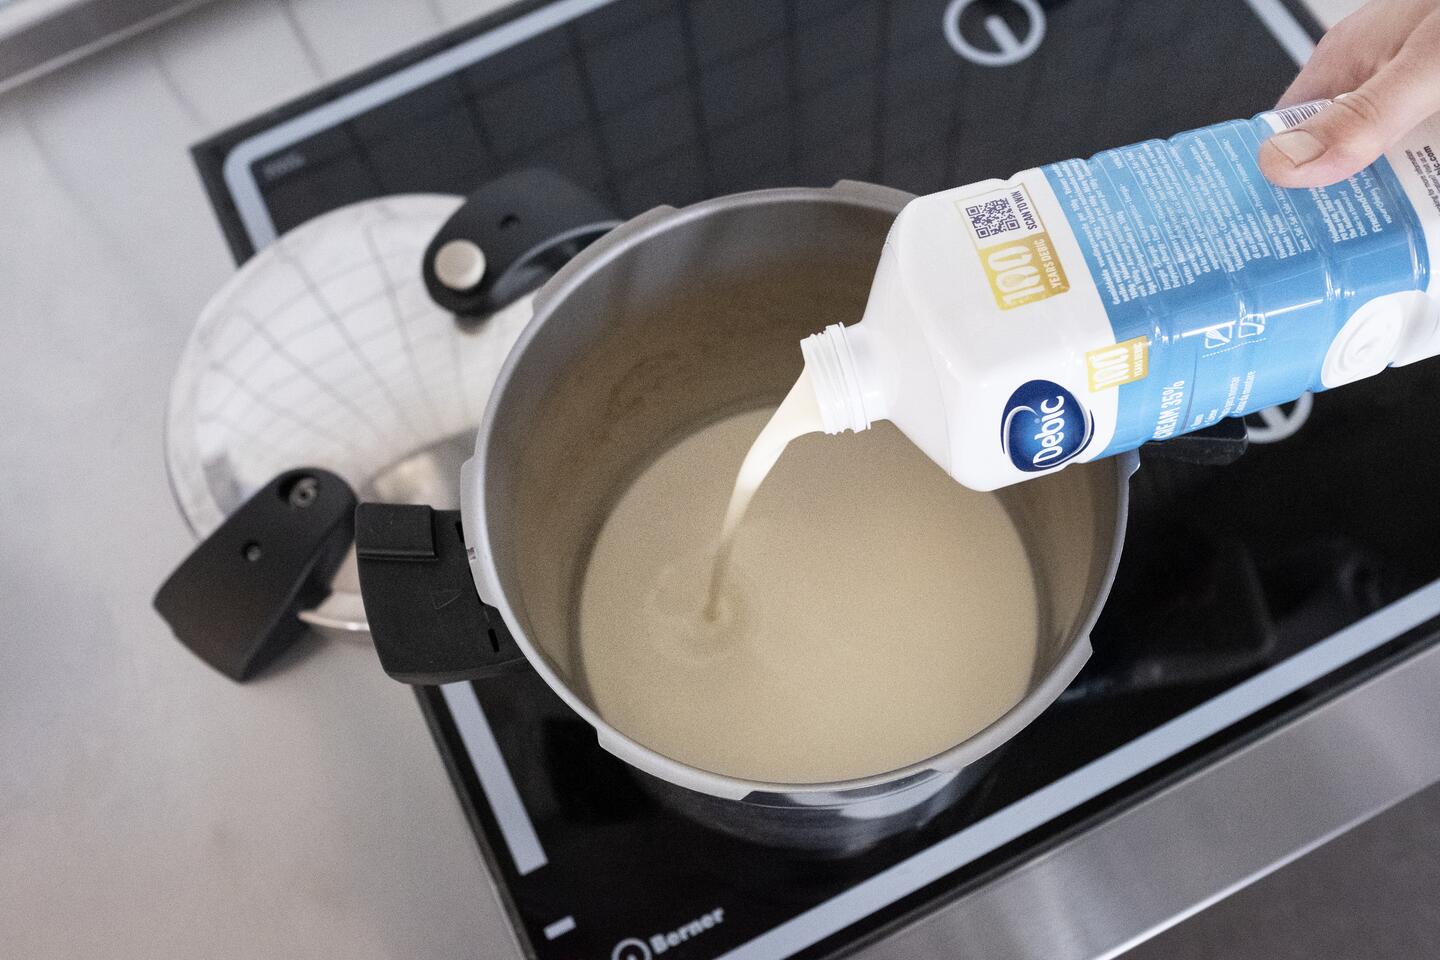 Caramelising cream under pressure